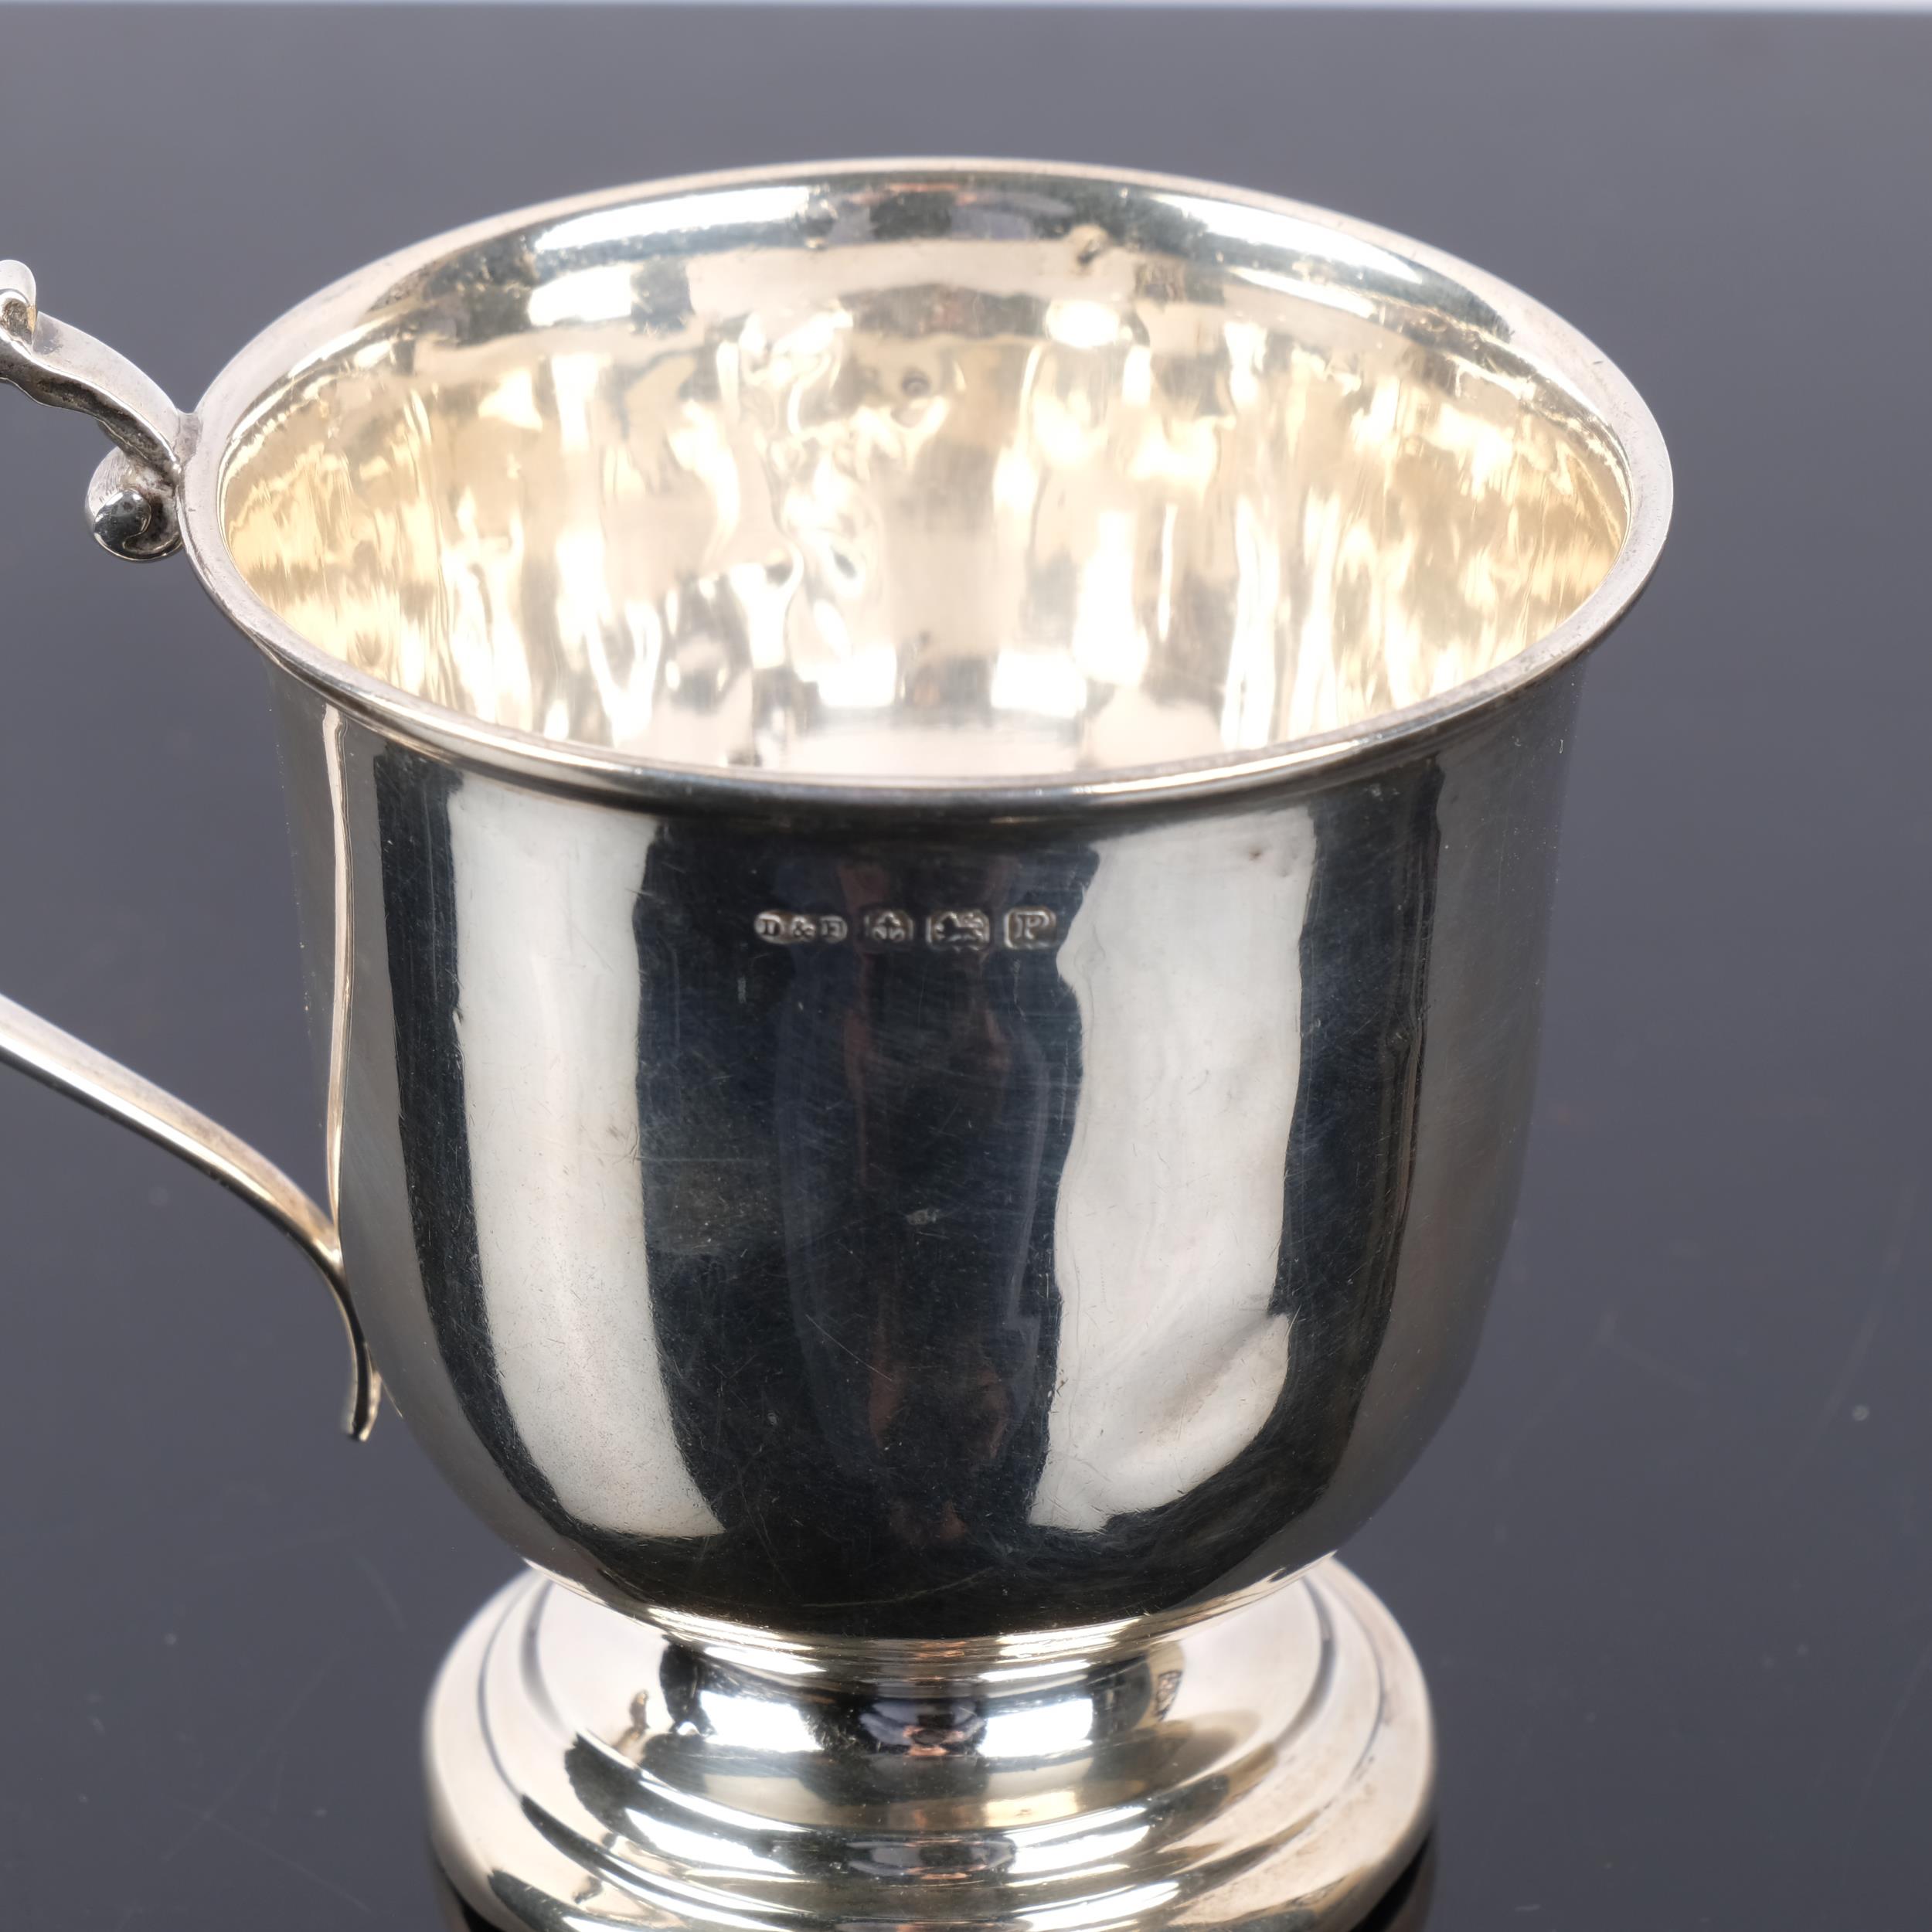 A George VI silver christening mug, Deakin & Francis, Birmingham 1939, 8cm, 2.2oz - Image 2 of 2